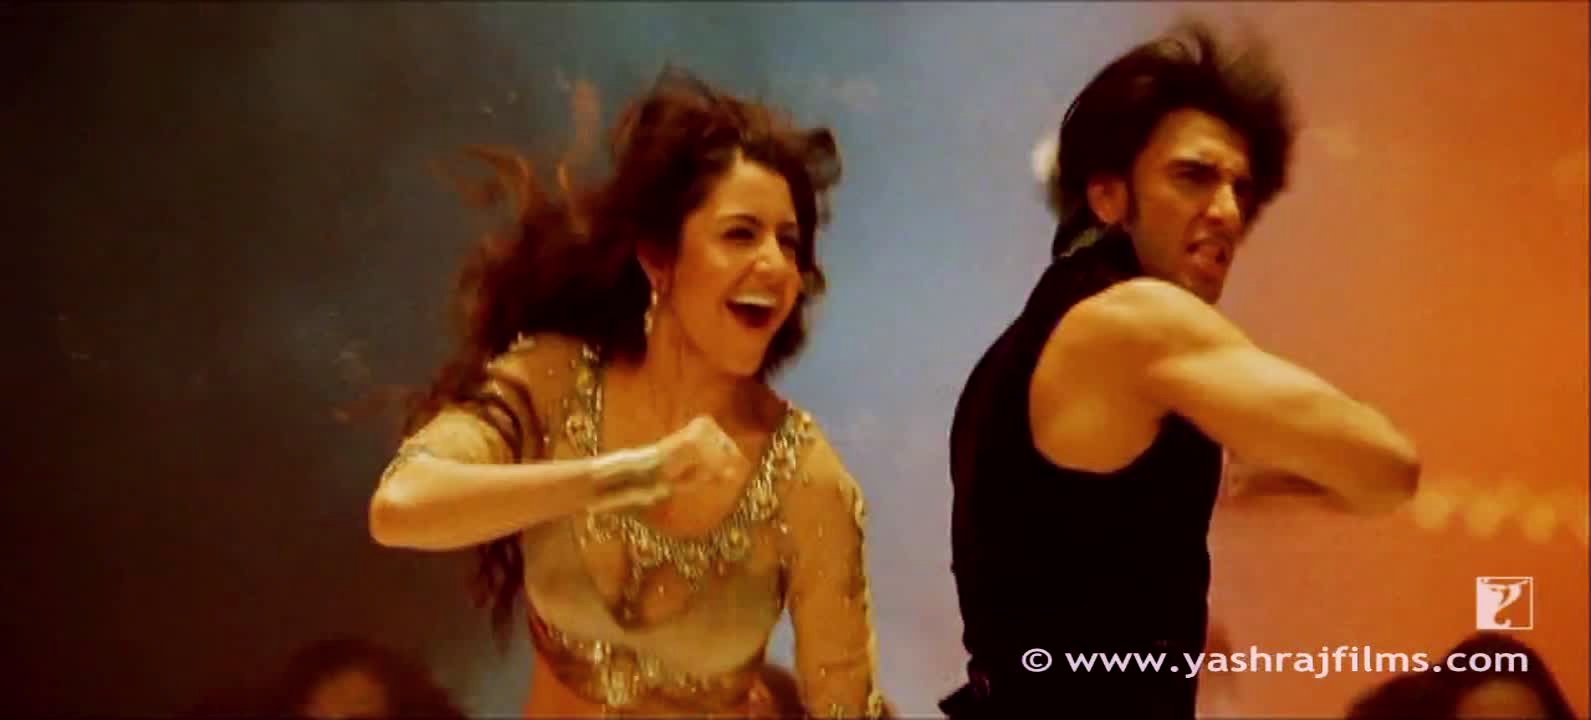 Anushka Sharma & Ranveer Singh - Dum dum